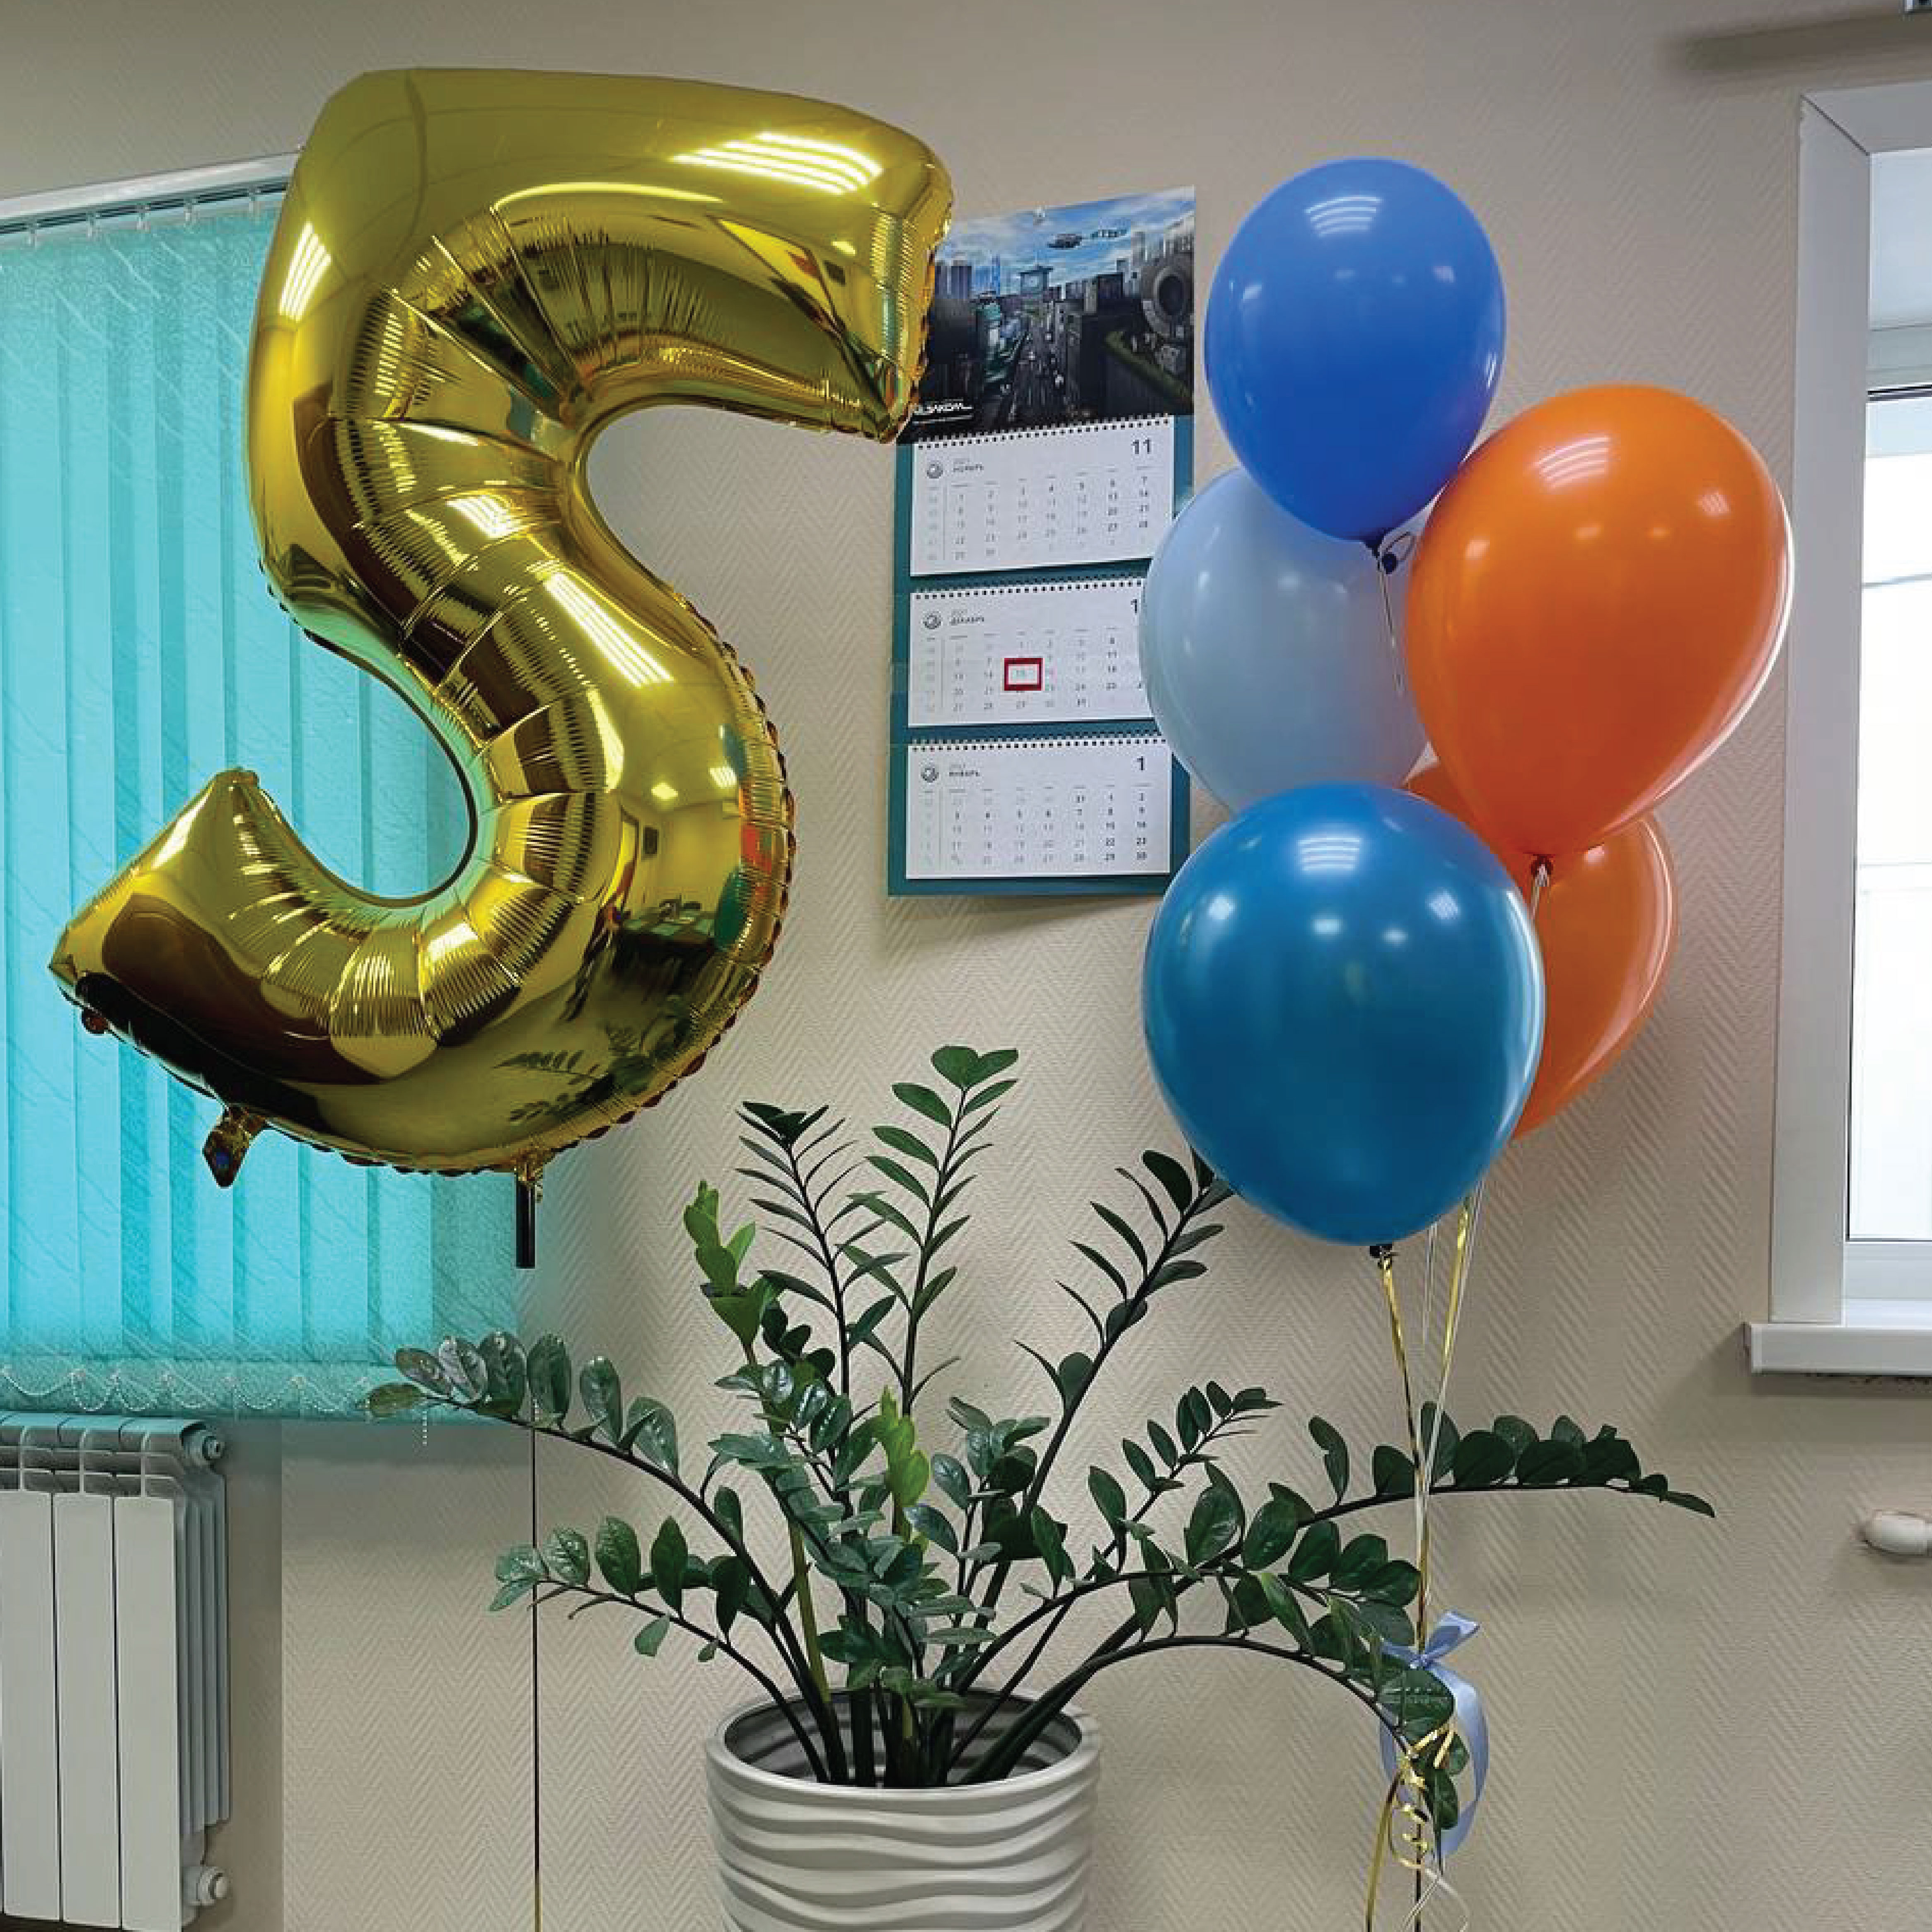 День рождения офиса «Элком» в Красноярске